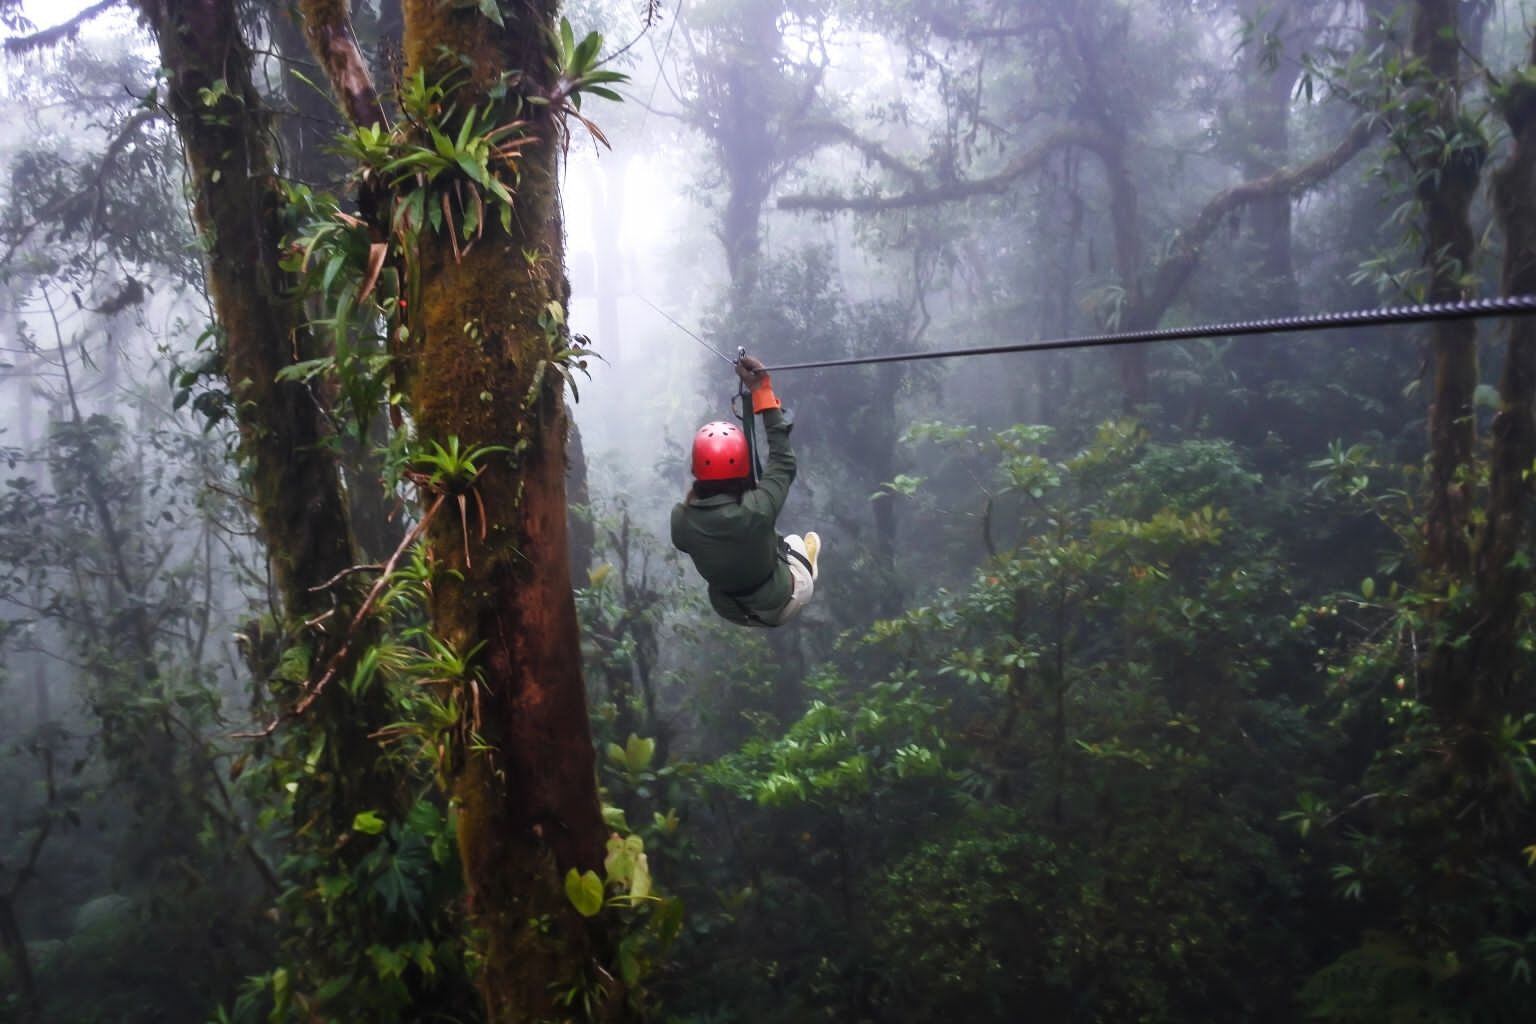 Costa Rica fue seleccionado como el mejor destino emergente gracias a la estrategia de sostenibilidad, el bienestar, múltiples actividade al aire libre y el estilo de vida que se resume en el “pura vida”. Foto: Cortesía.